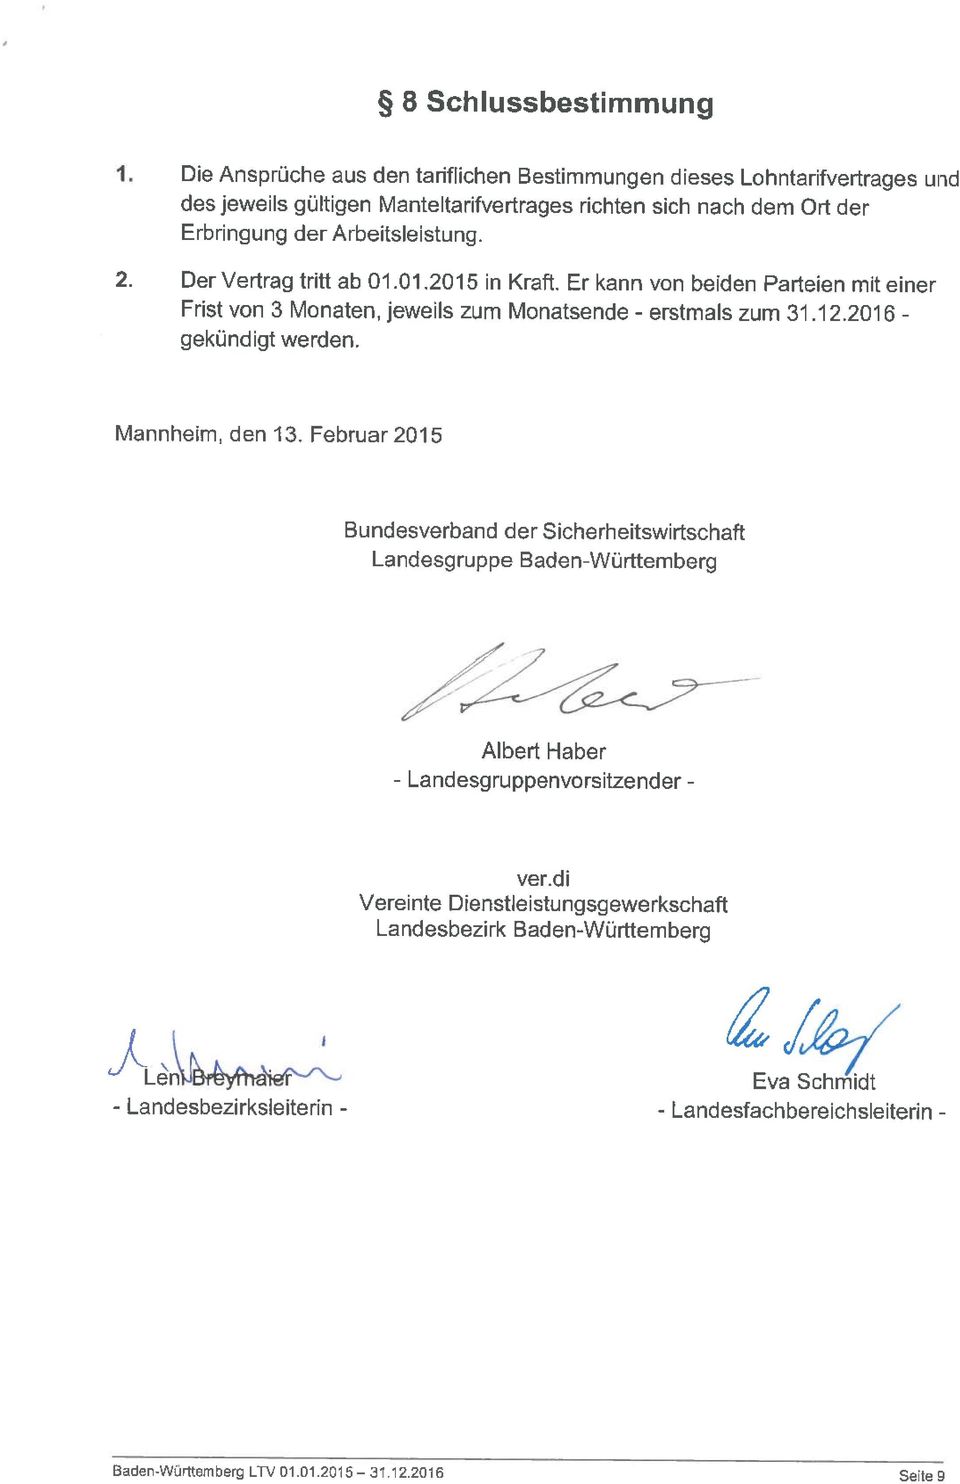 2. Der Vertrag tritt ab 01.01.2015 in Kraft. Er kann von beiden Parteien mit einer Frist von 3 Monaten, jeweils zum Monatsende gekündigt werden. zum 31.12.2016 Mannheim, den 13.